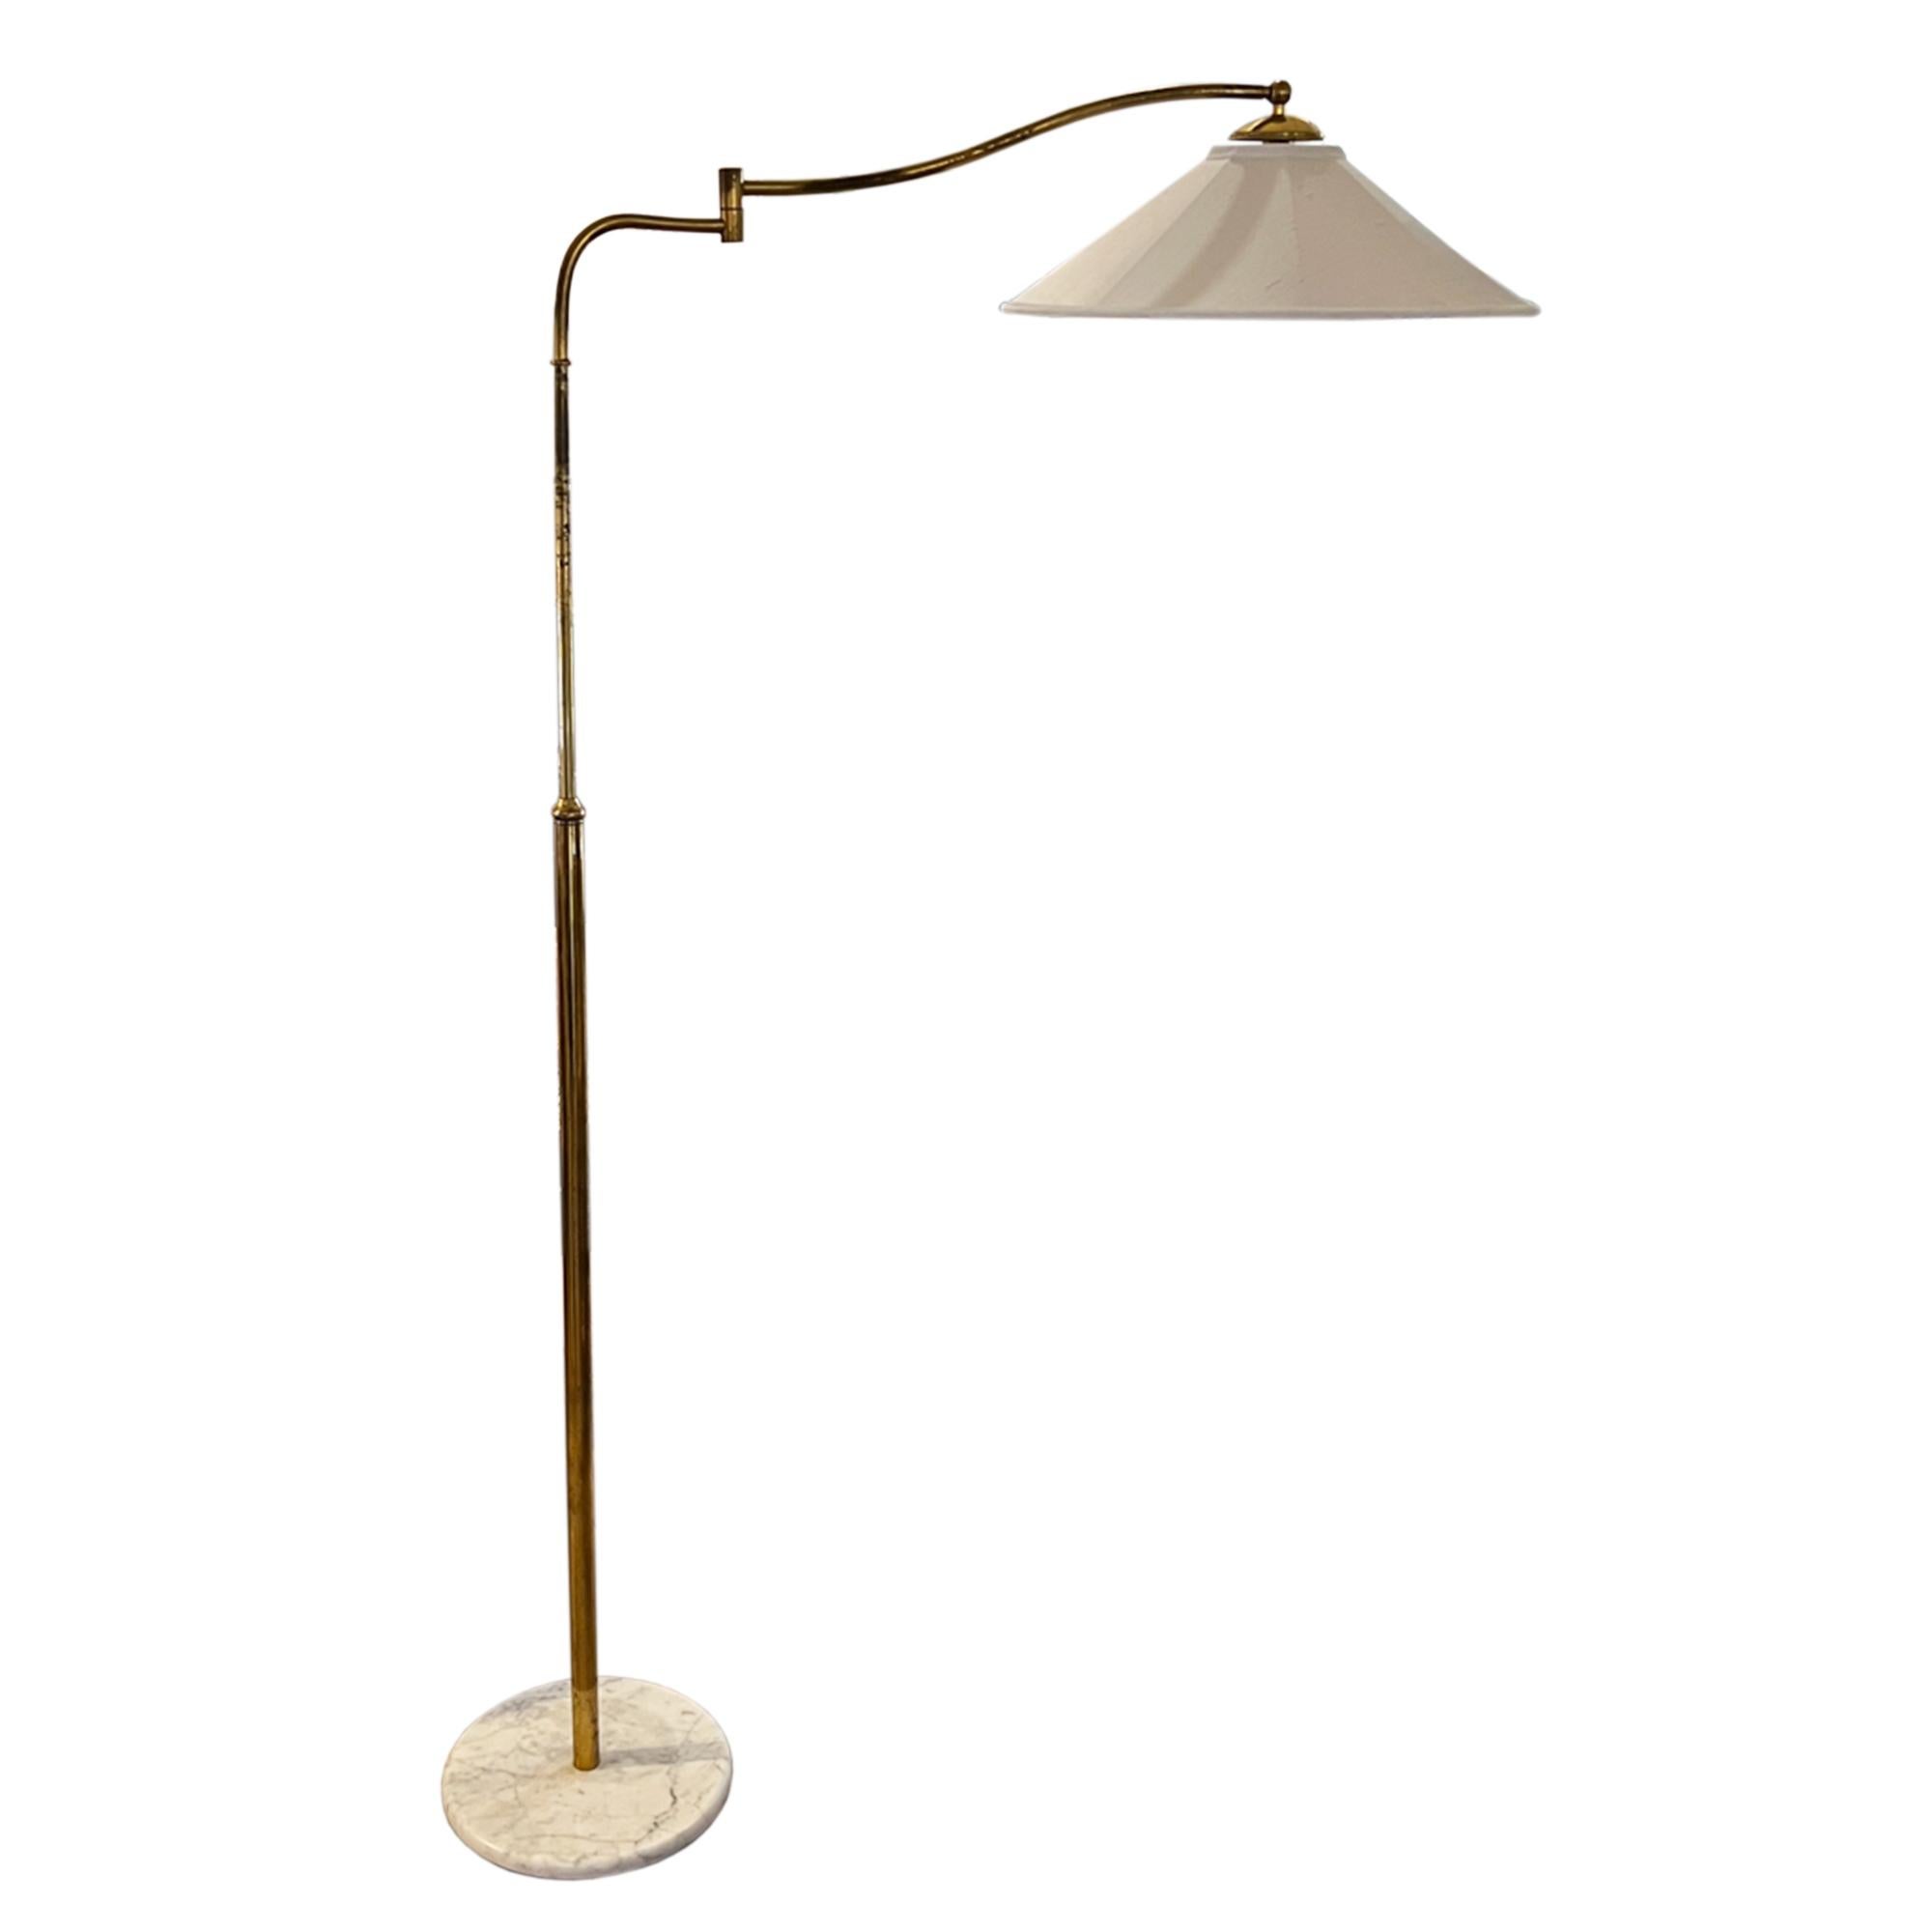 Il s'agit d'un lampadaire italien classique, avec un bras mobile. 

Fabriqué en laiton avec une belle base en marbre blanc/gris. 

Entièrement réglable, cette lampe est à la fois pratique et décorative. La hauteur maximale est de 185 cm au coude et